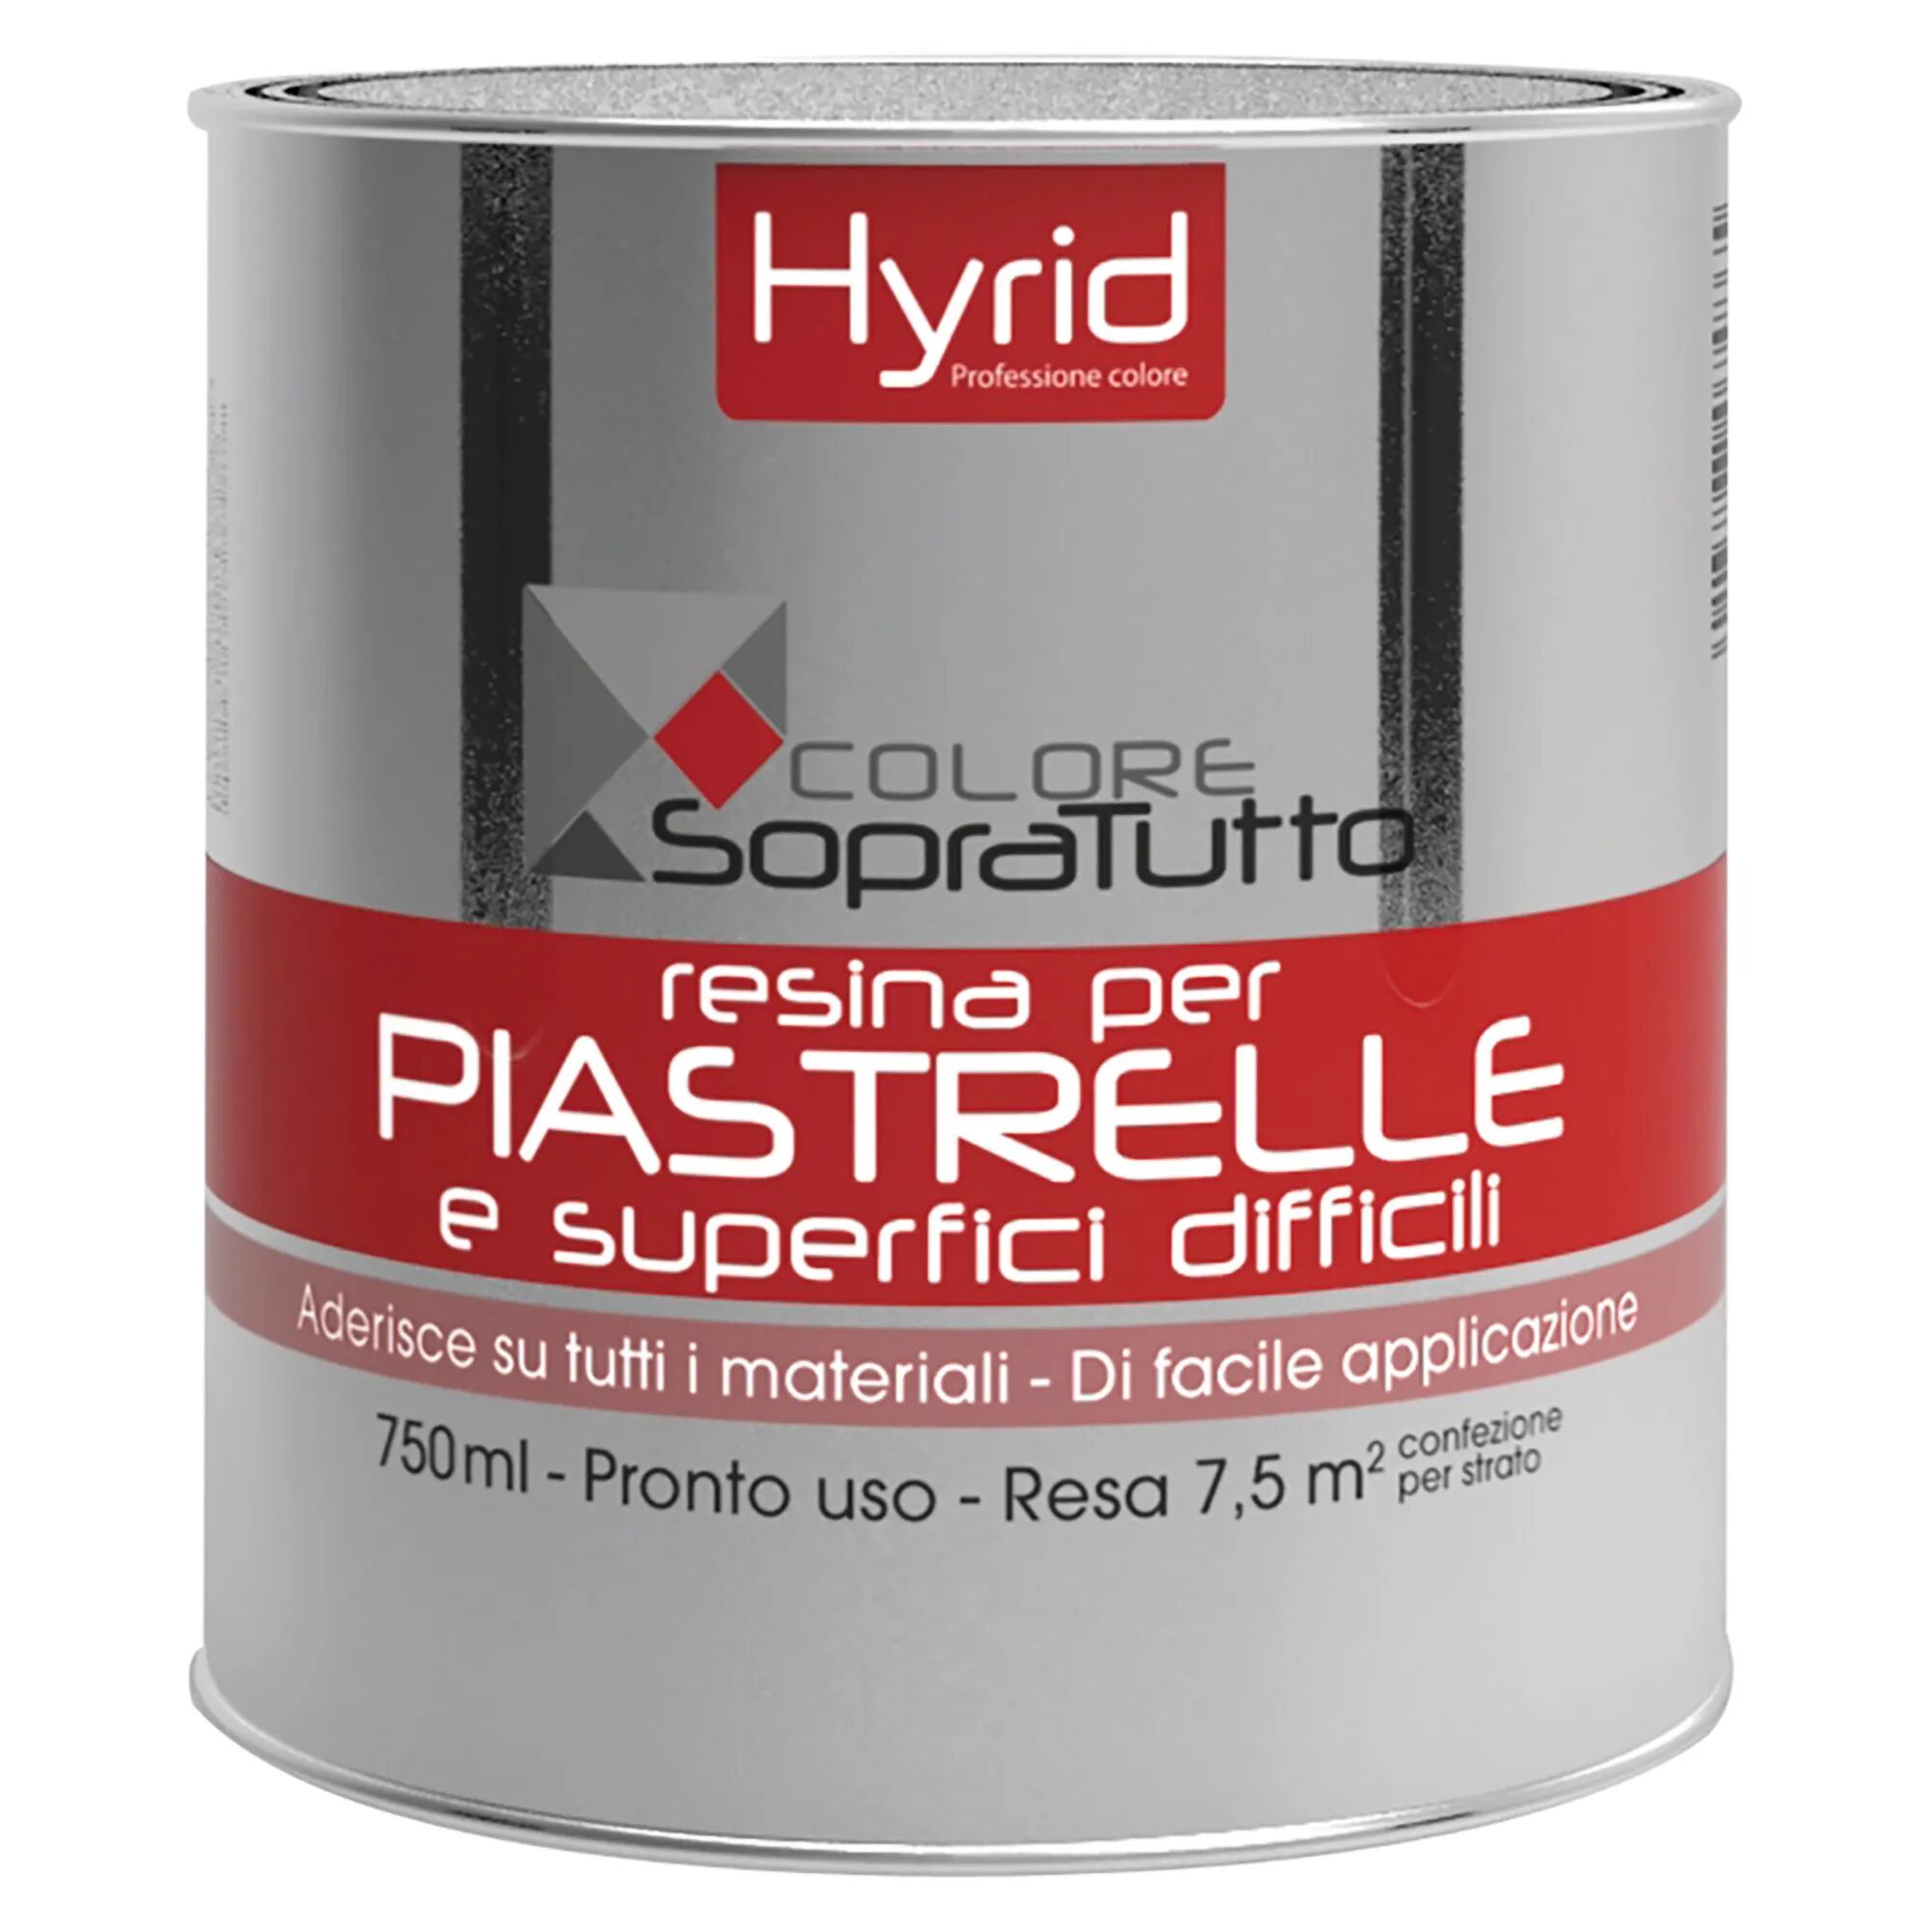 Hyrid By Covema RESINA PIASTRELLE HYRID GLICINE 750 ml PER SUPERFICI DIFFICILI 10 m²  CON 1 l PRONTO USO